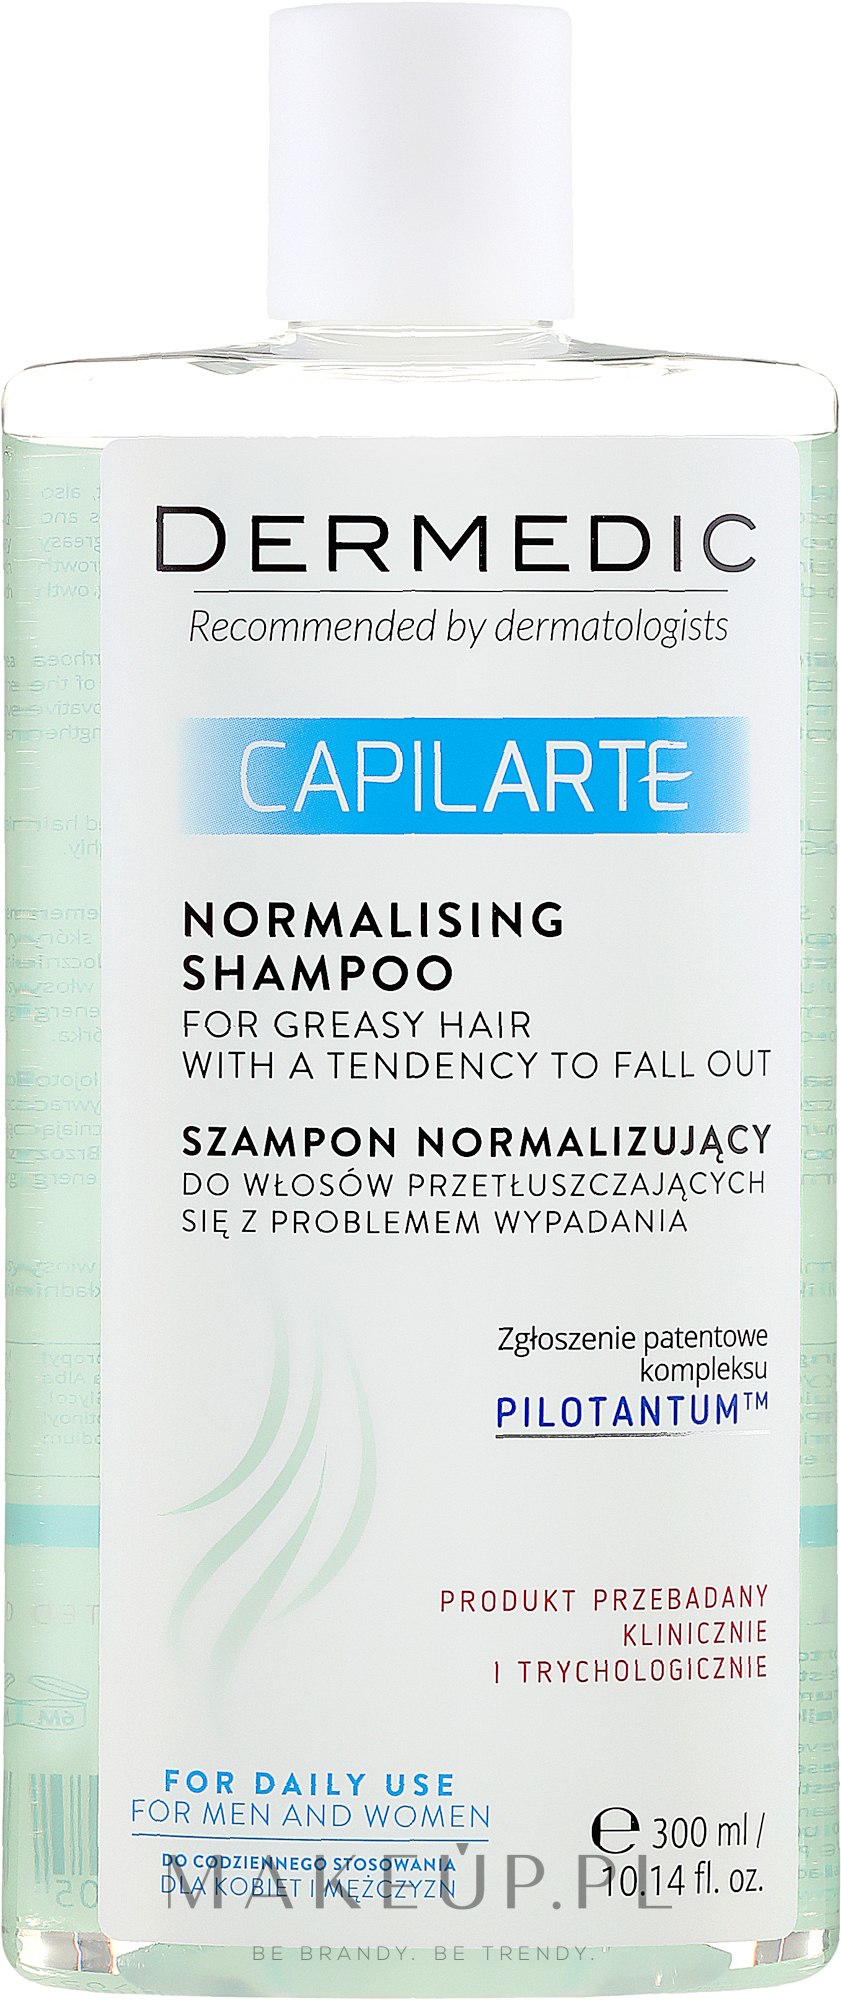 dermedic capilarte szampon wlosy przetluszczajace sie